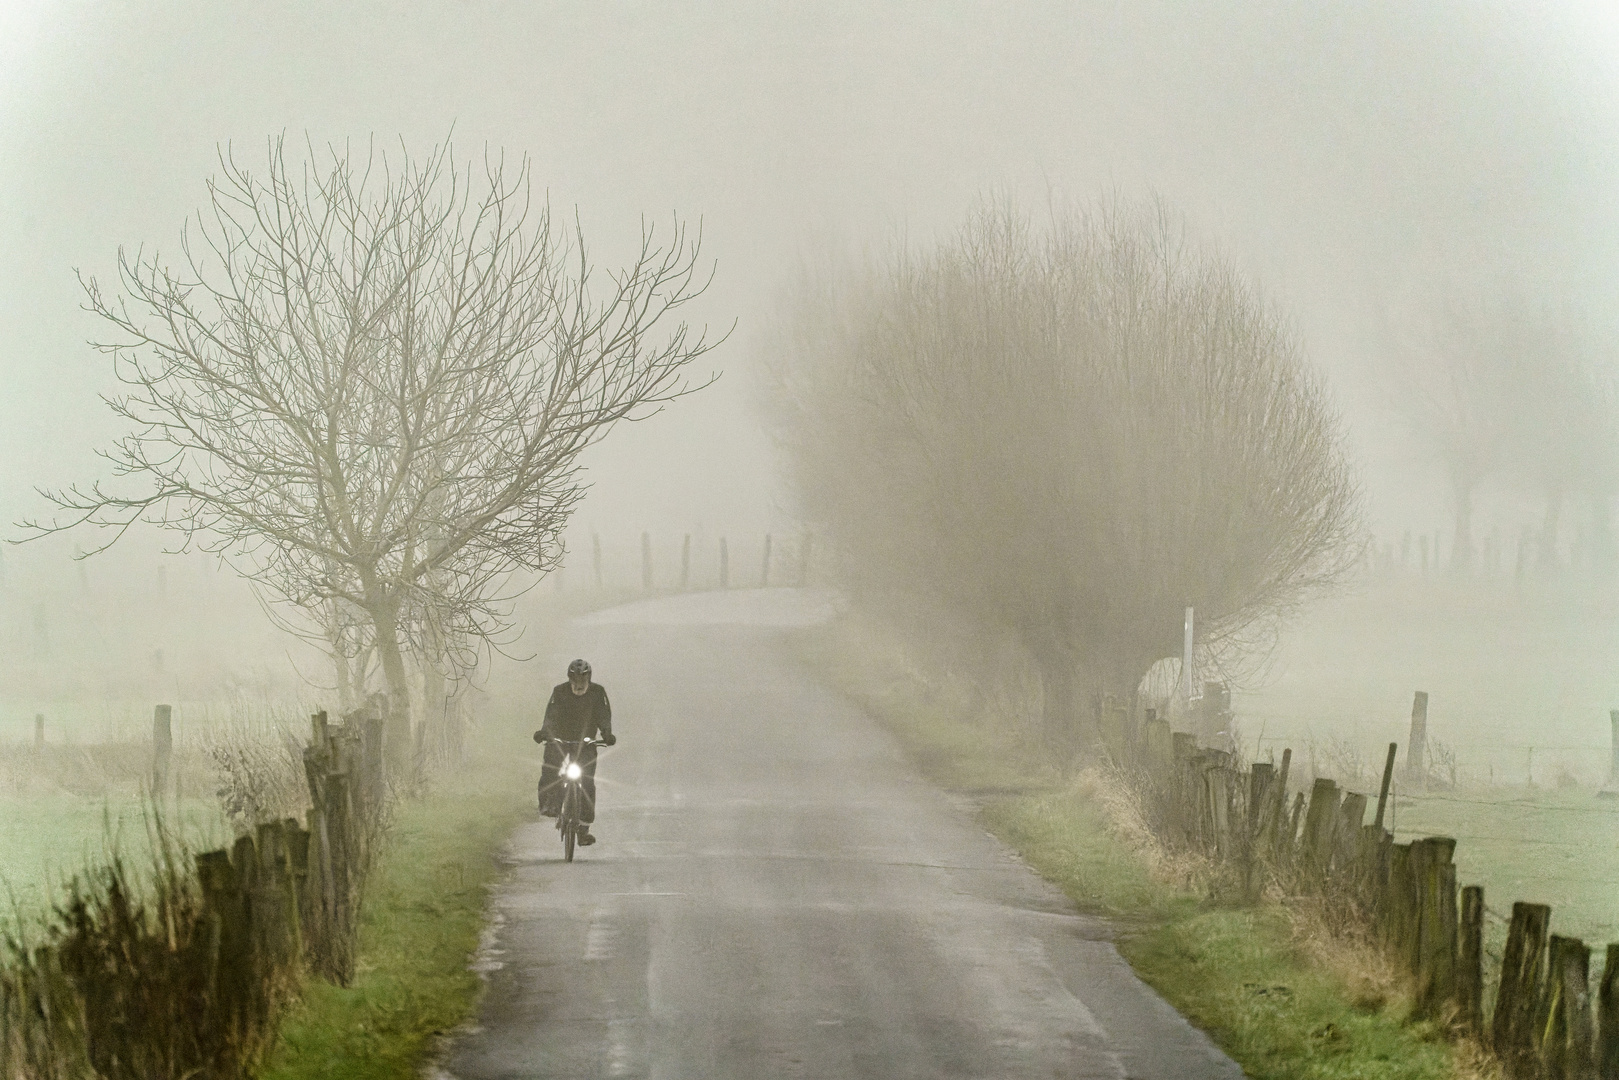 Fahrradfahrer im Nebel, Bislicher Insel, 2022.01.15.